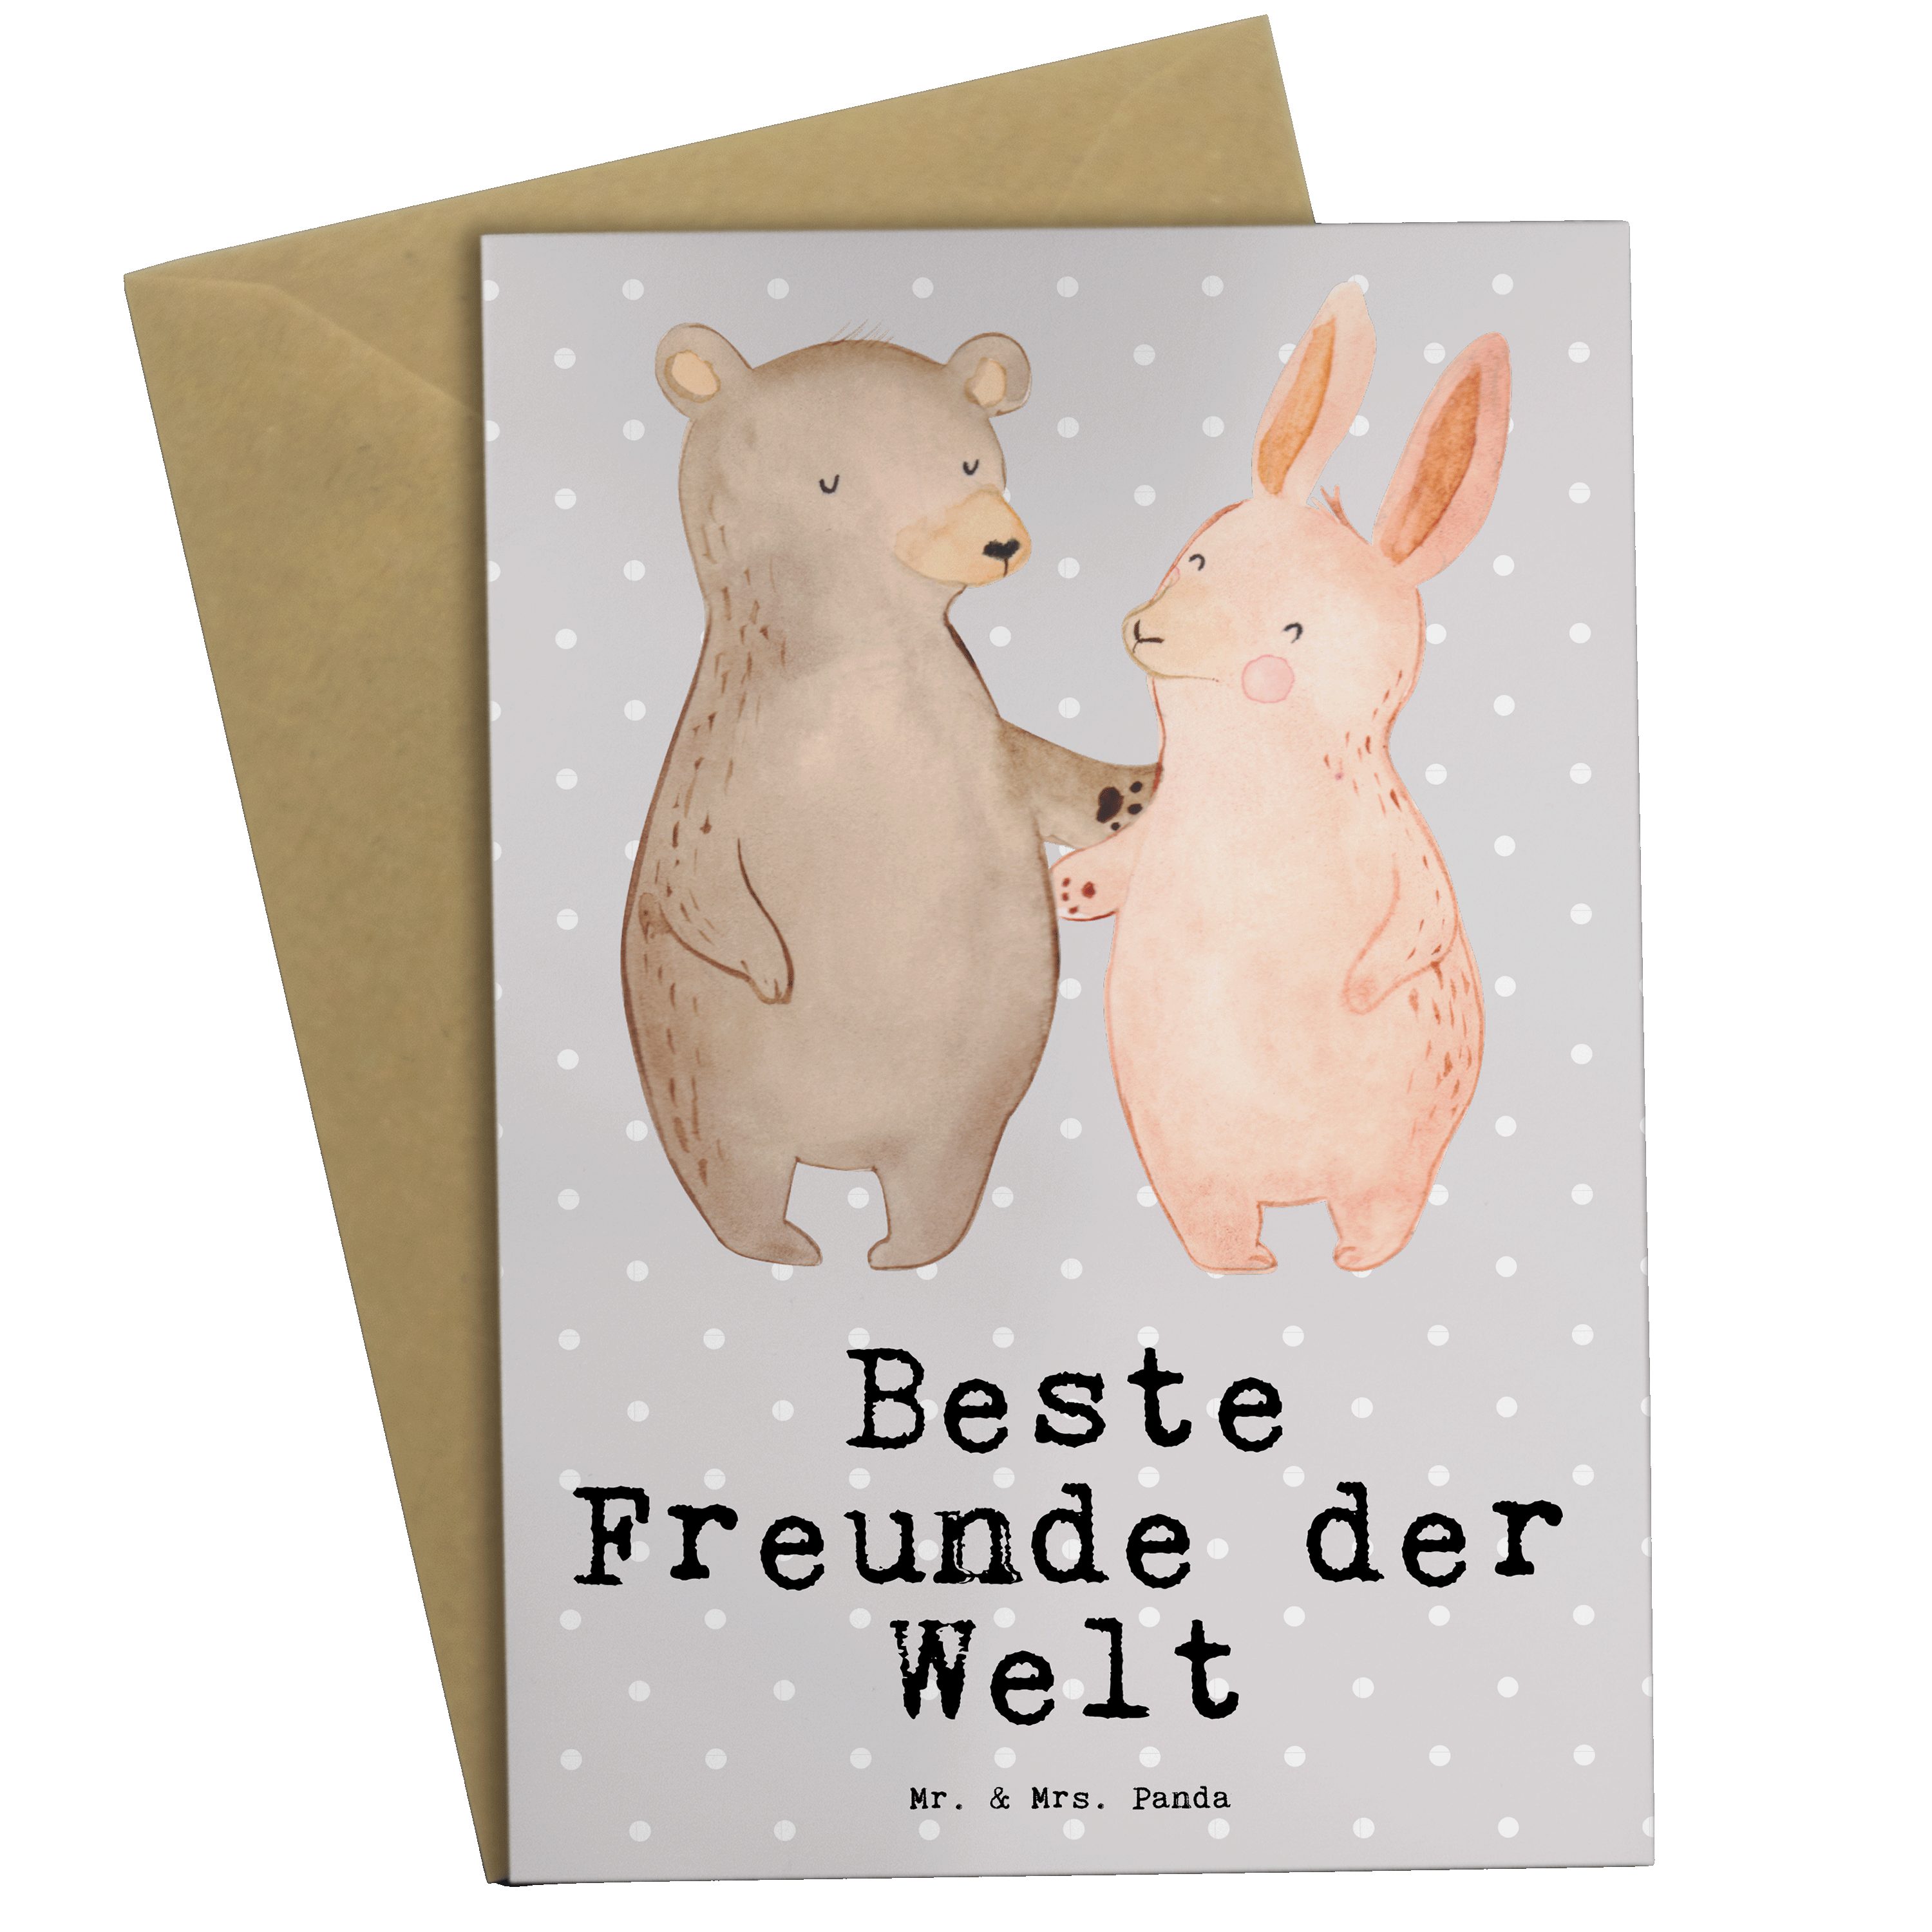 Mr. & Mrs. Panda Grußkarte Hase Beste Freunde der Welt - Grau Pastell - Geschenk, Danke, Geburts